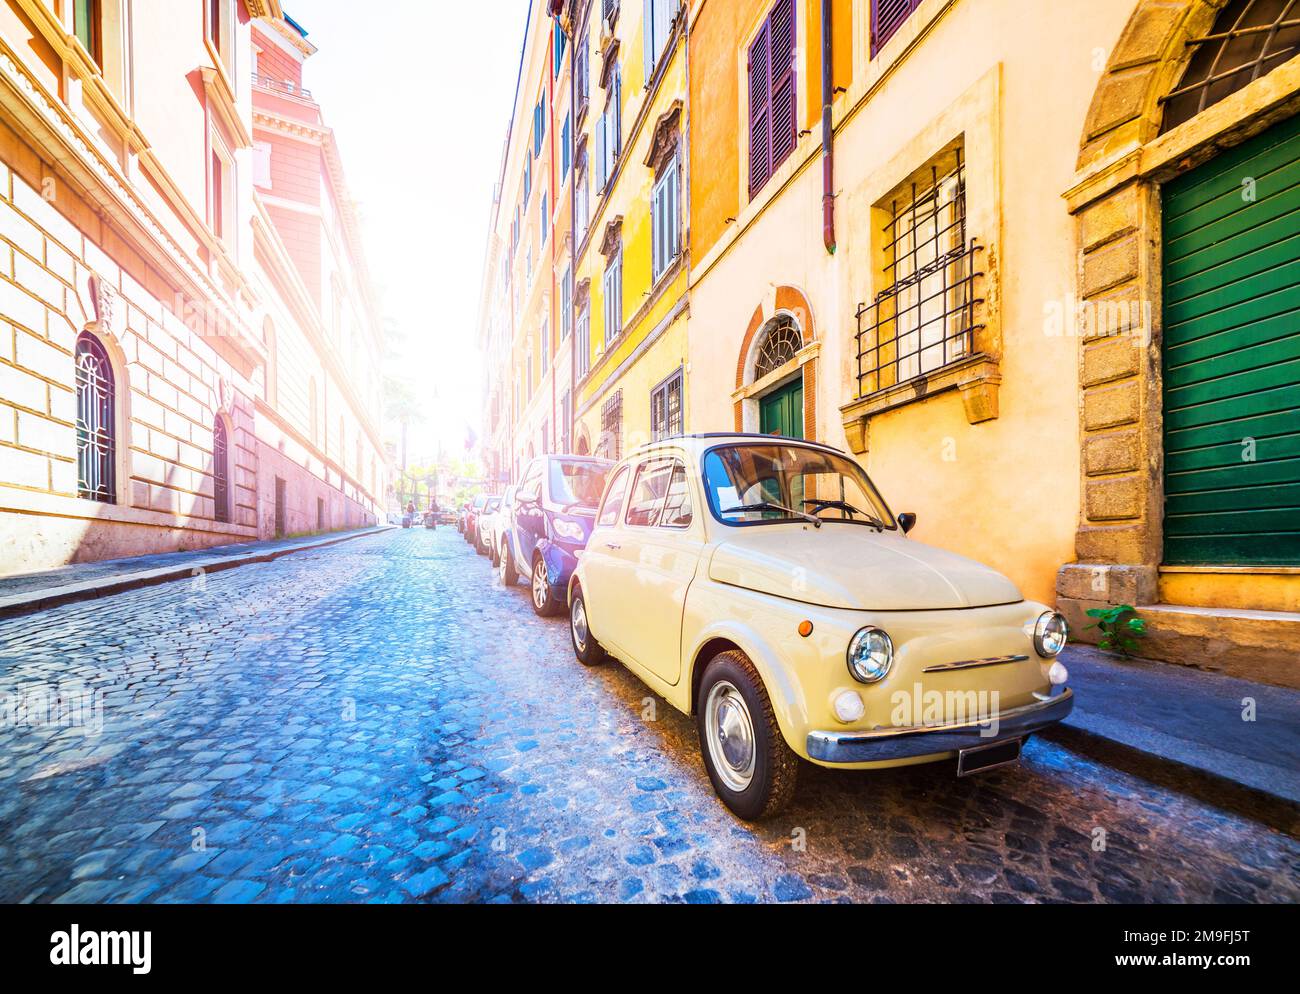 Petite voiture d'époque dans une belle rue de Rome, en Italie. Voiture rétro classique dans une rue colorée. Banque D'Images